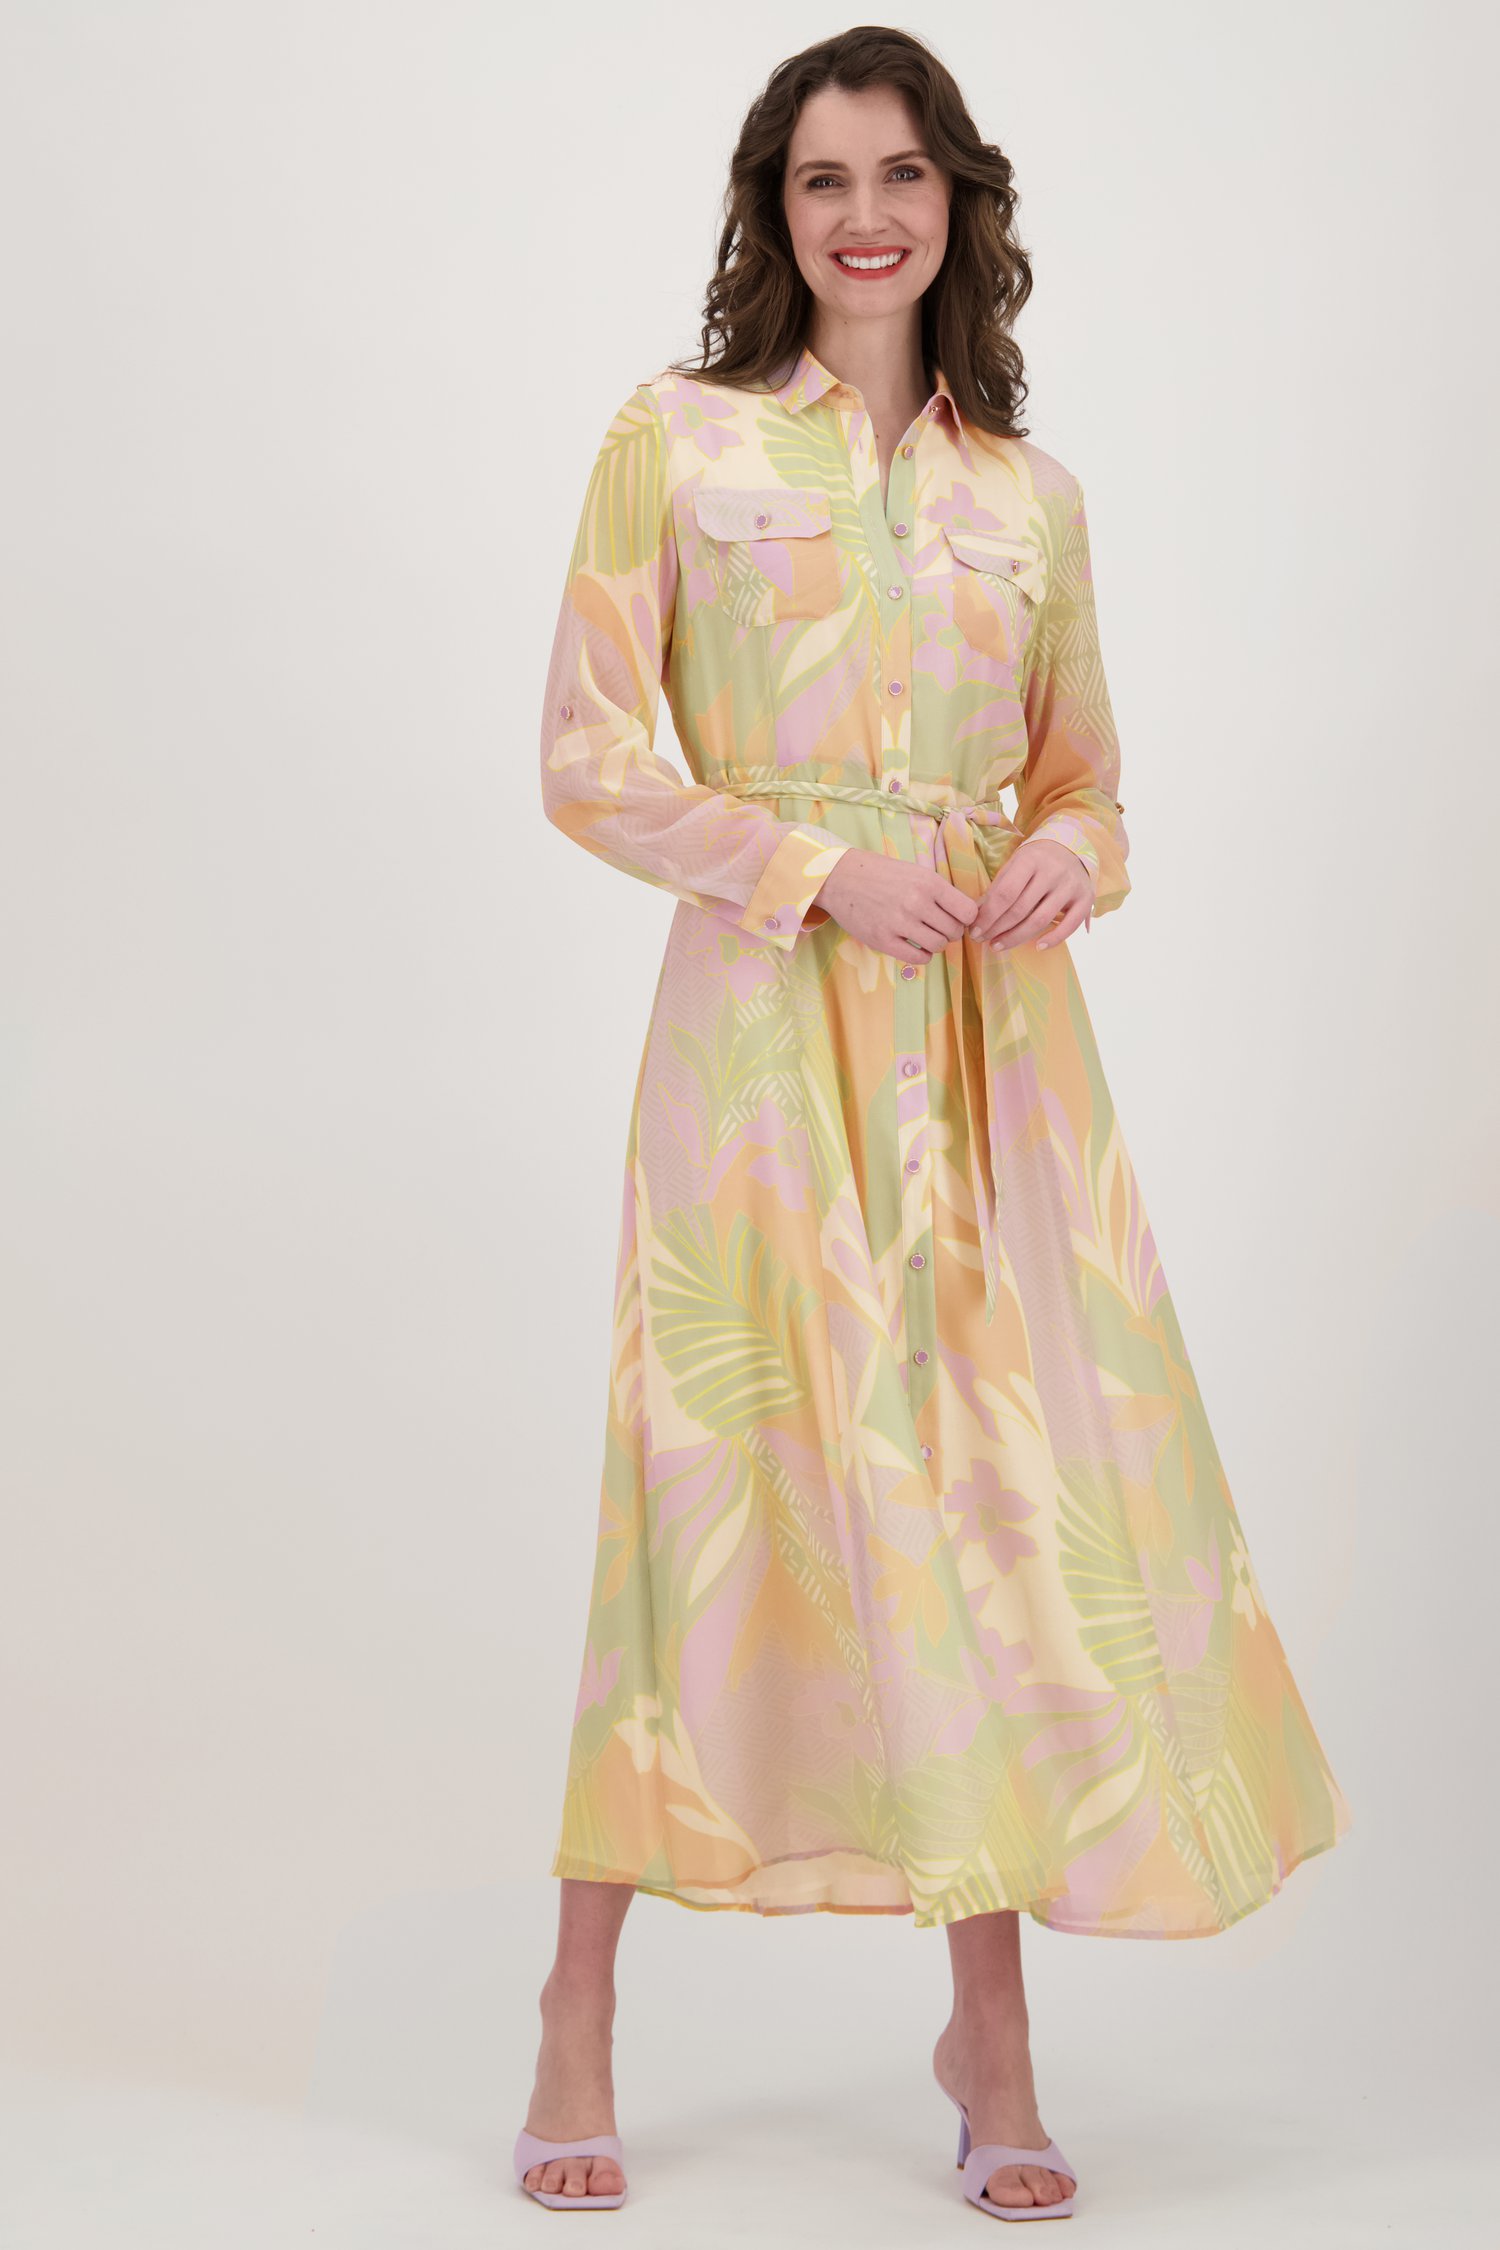 Lang kleedje met pastel print van D'Auvry voor Dames